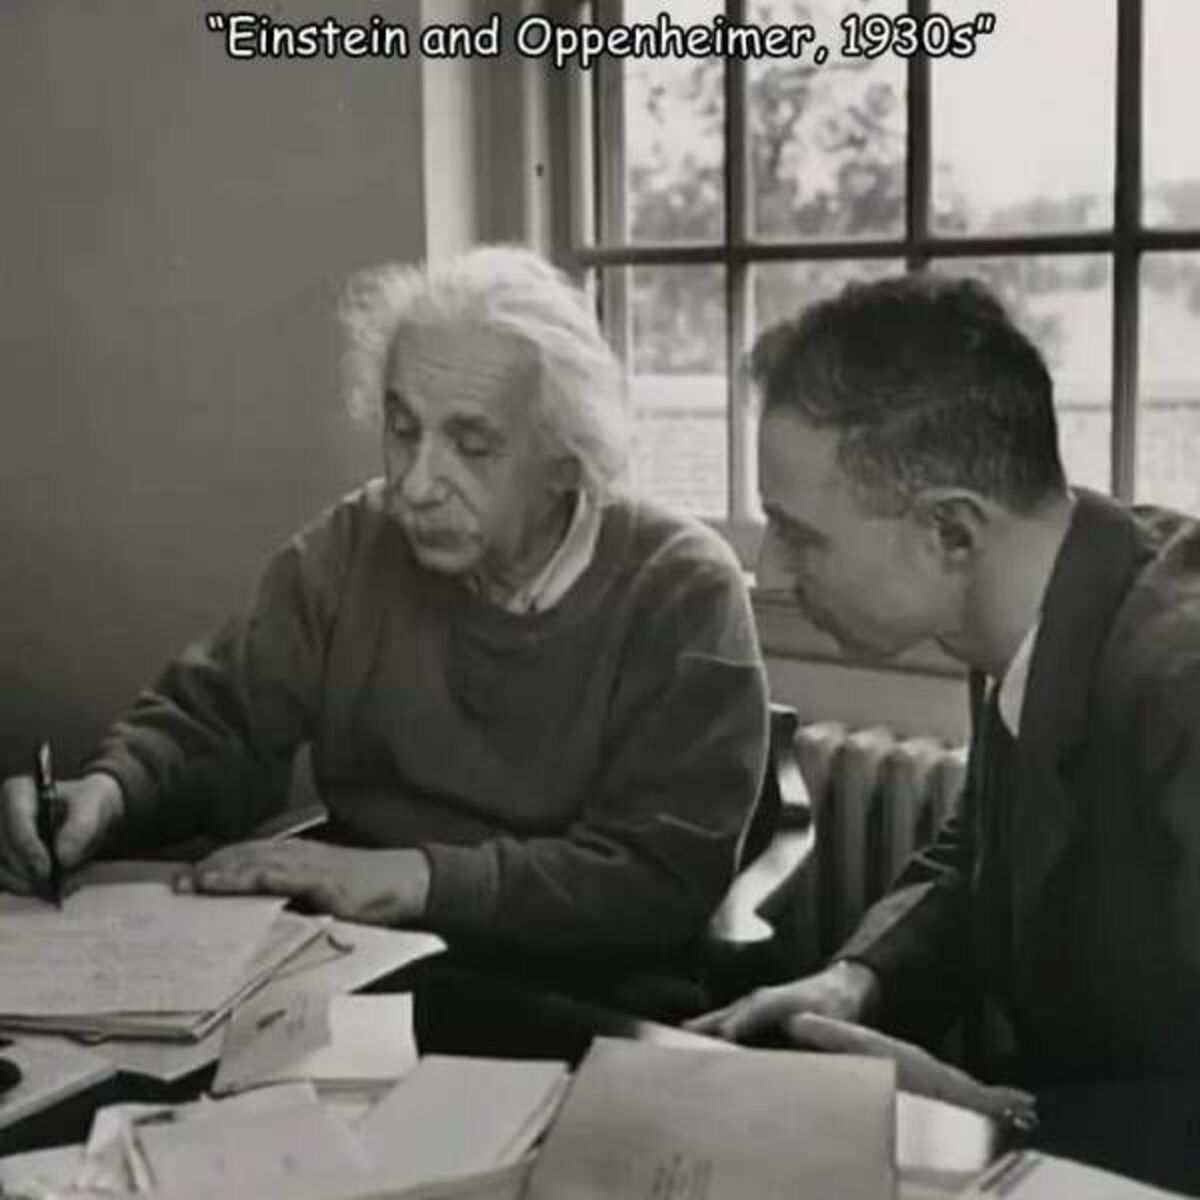 robert oppenheimer y albert einstein - "Einstein and Oppenheimer, 1930s"